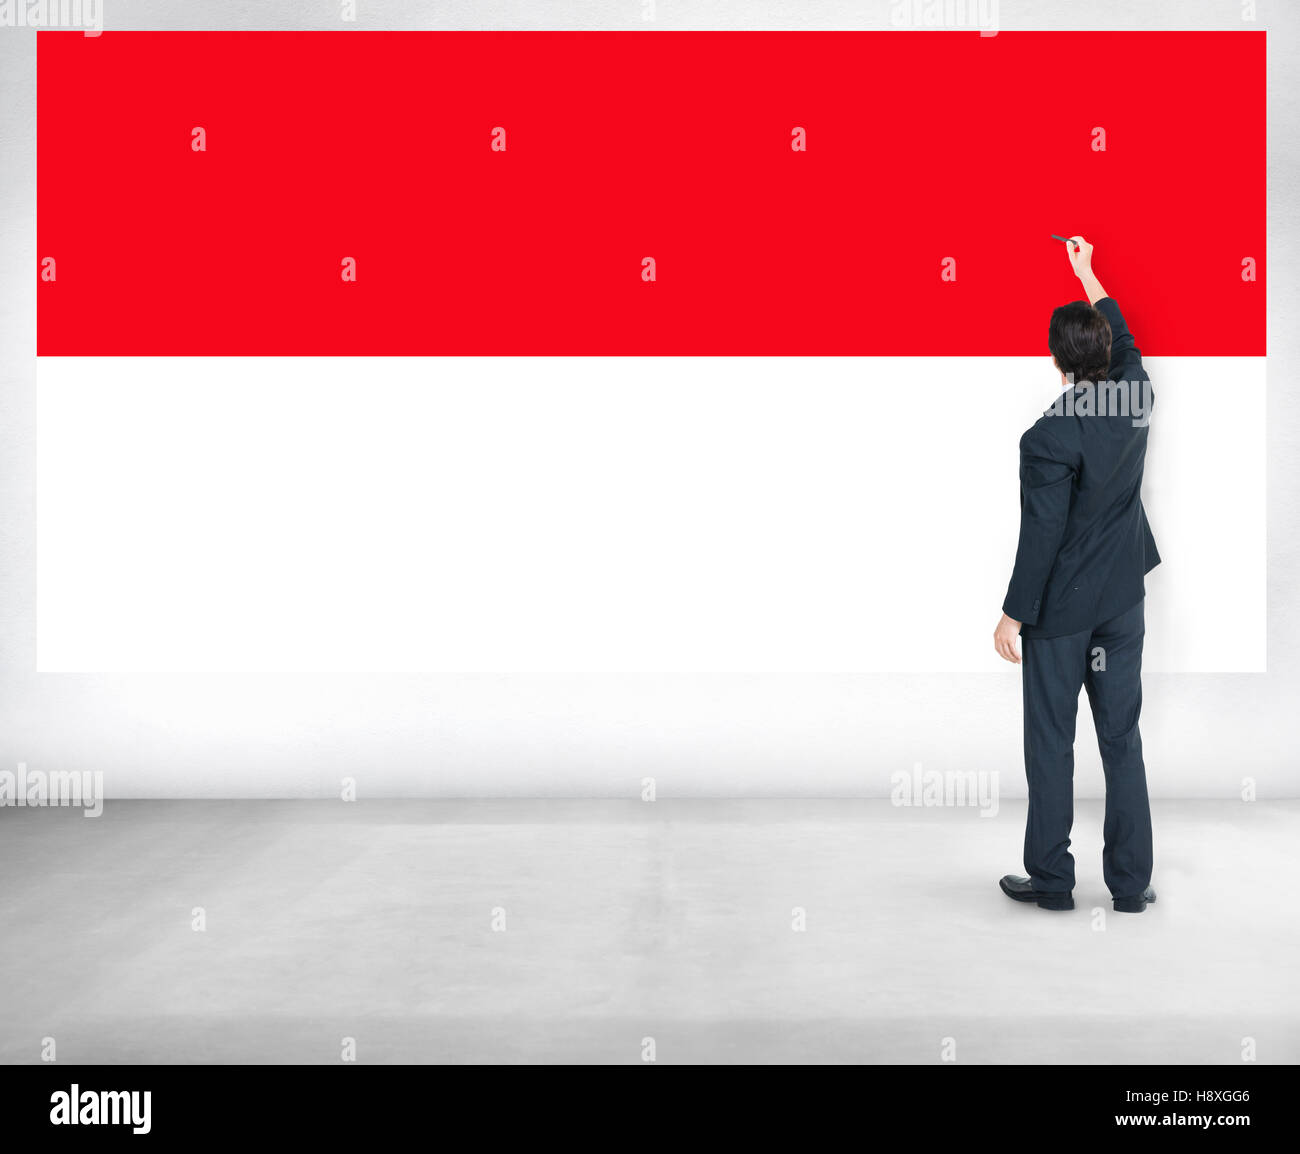 La nacionalidad del país de bandera indonesia concepto Liberty Foto de stock